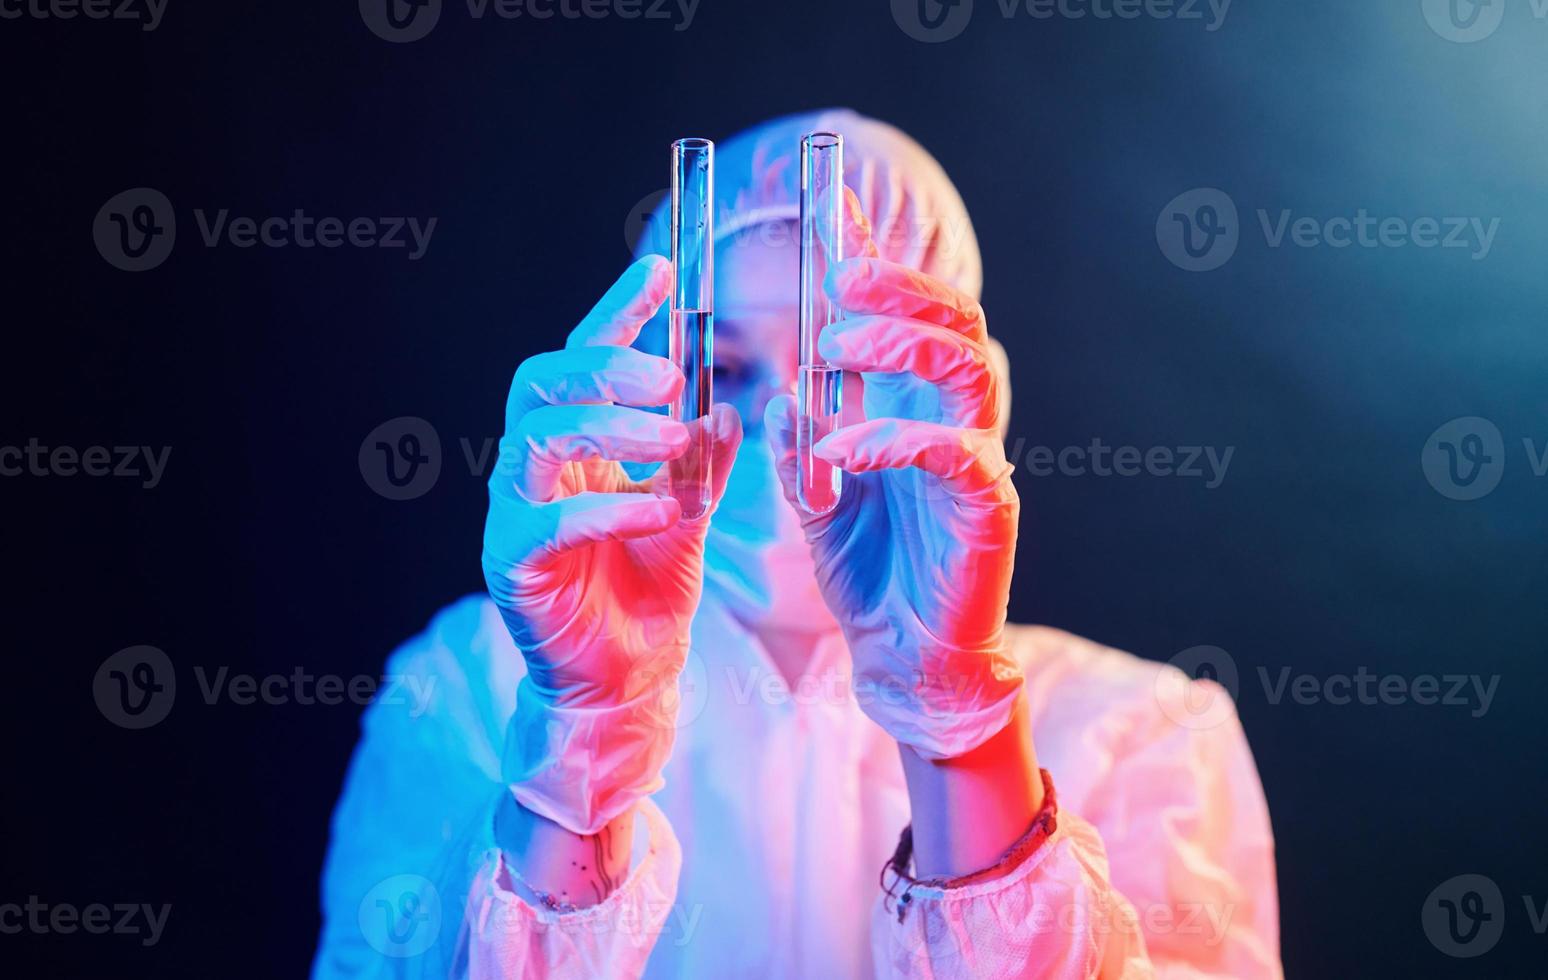 krankenschwester in maske und weißer uniform, die in einem neonbeleuchteten raum steht und röhrchen mit proben hält foto